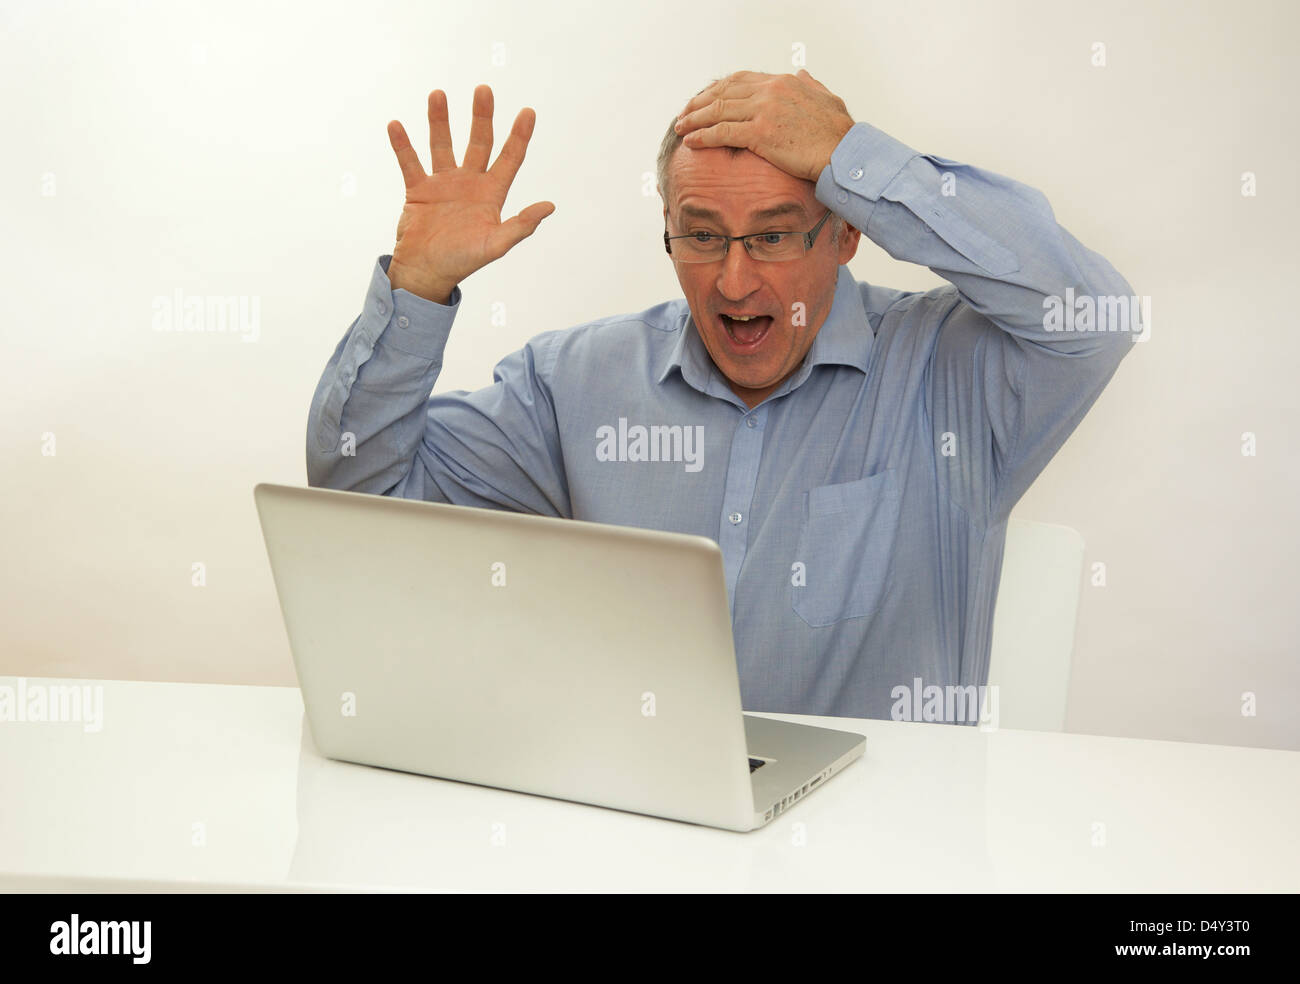 Überglücklich Mann hand auf Kopf mit Blick auf einem Laptop-Bildschirm, froh, dass er einen Preis gewonnen hat. Stockfoto